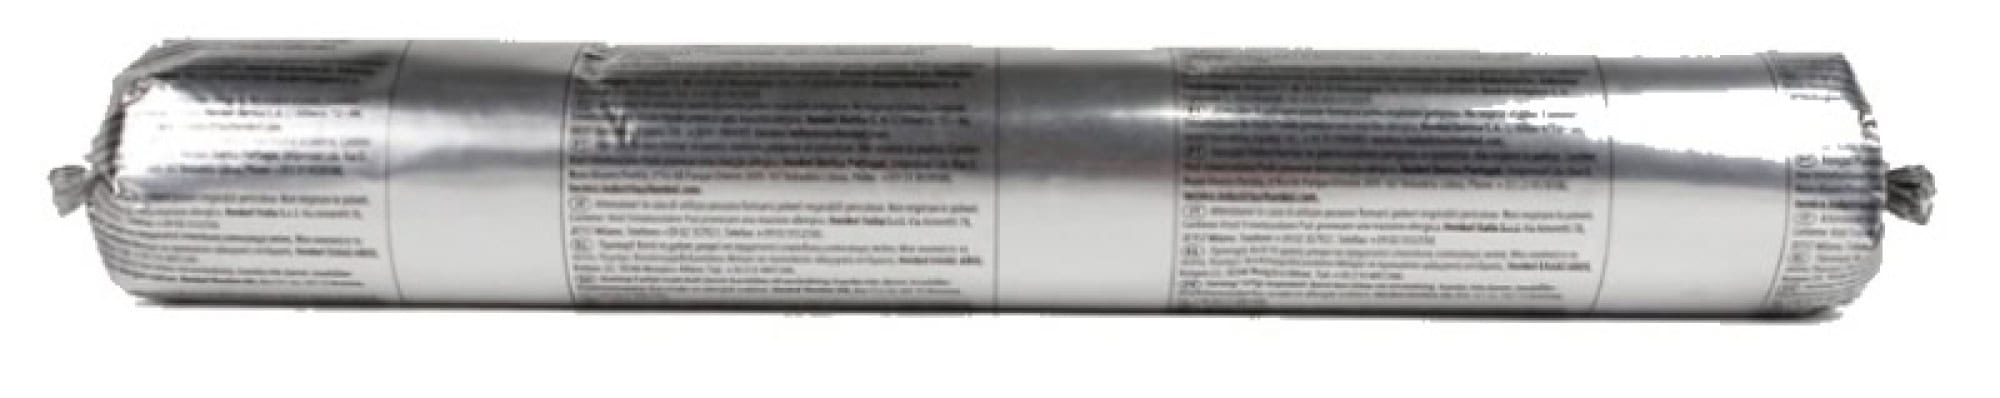 Henkel™ Teroson® Silanmodifizierter Polymer Kleb-/Dichtstoff MS 939, 570 ml Folienbeutel, Weiß, Thixotrop, 1K, 2448670, Für mechanische Sicherheit